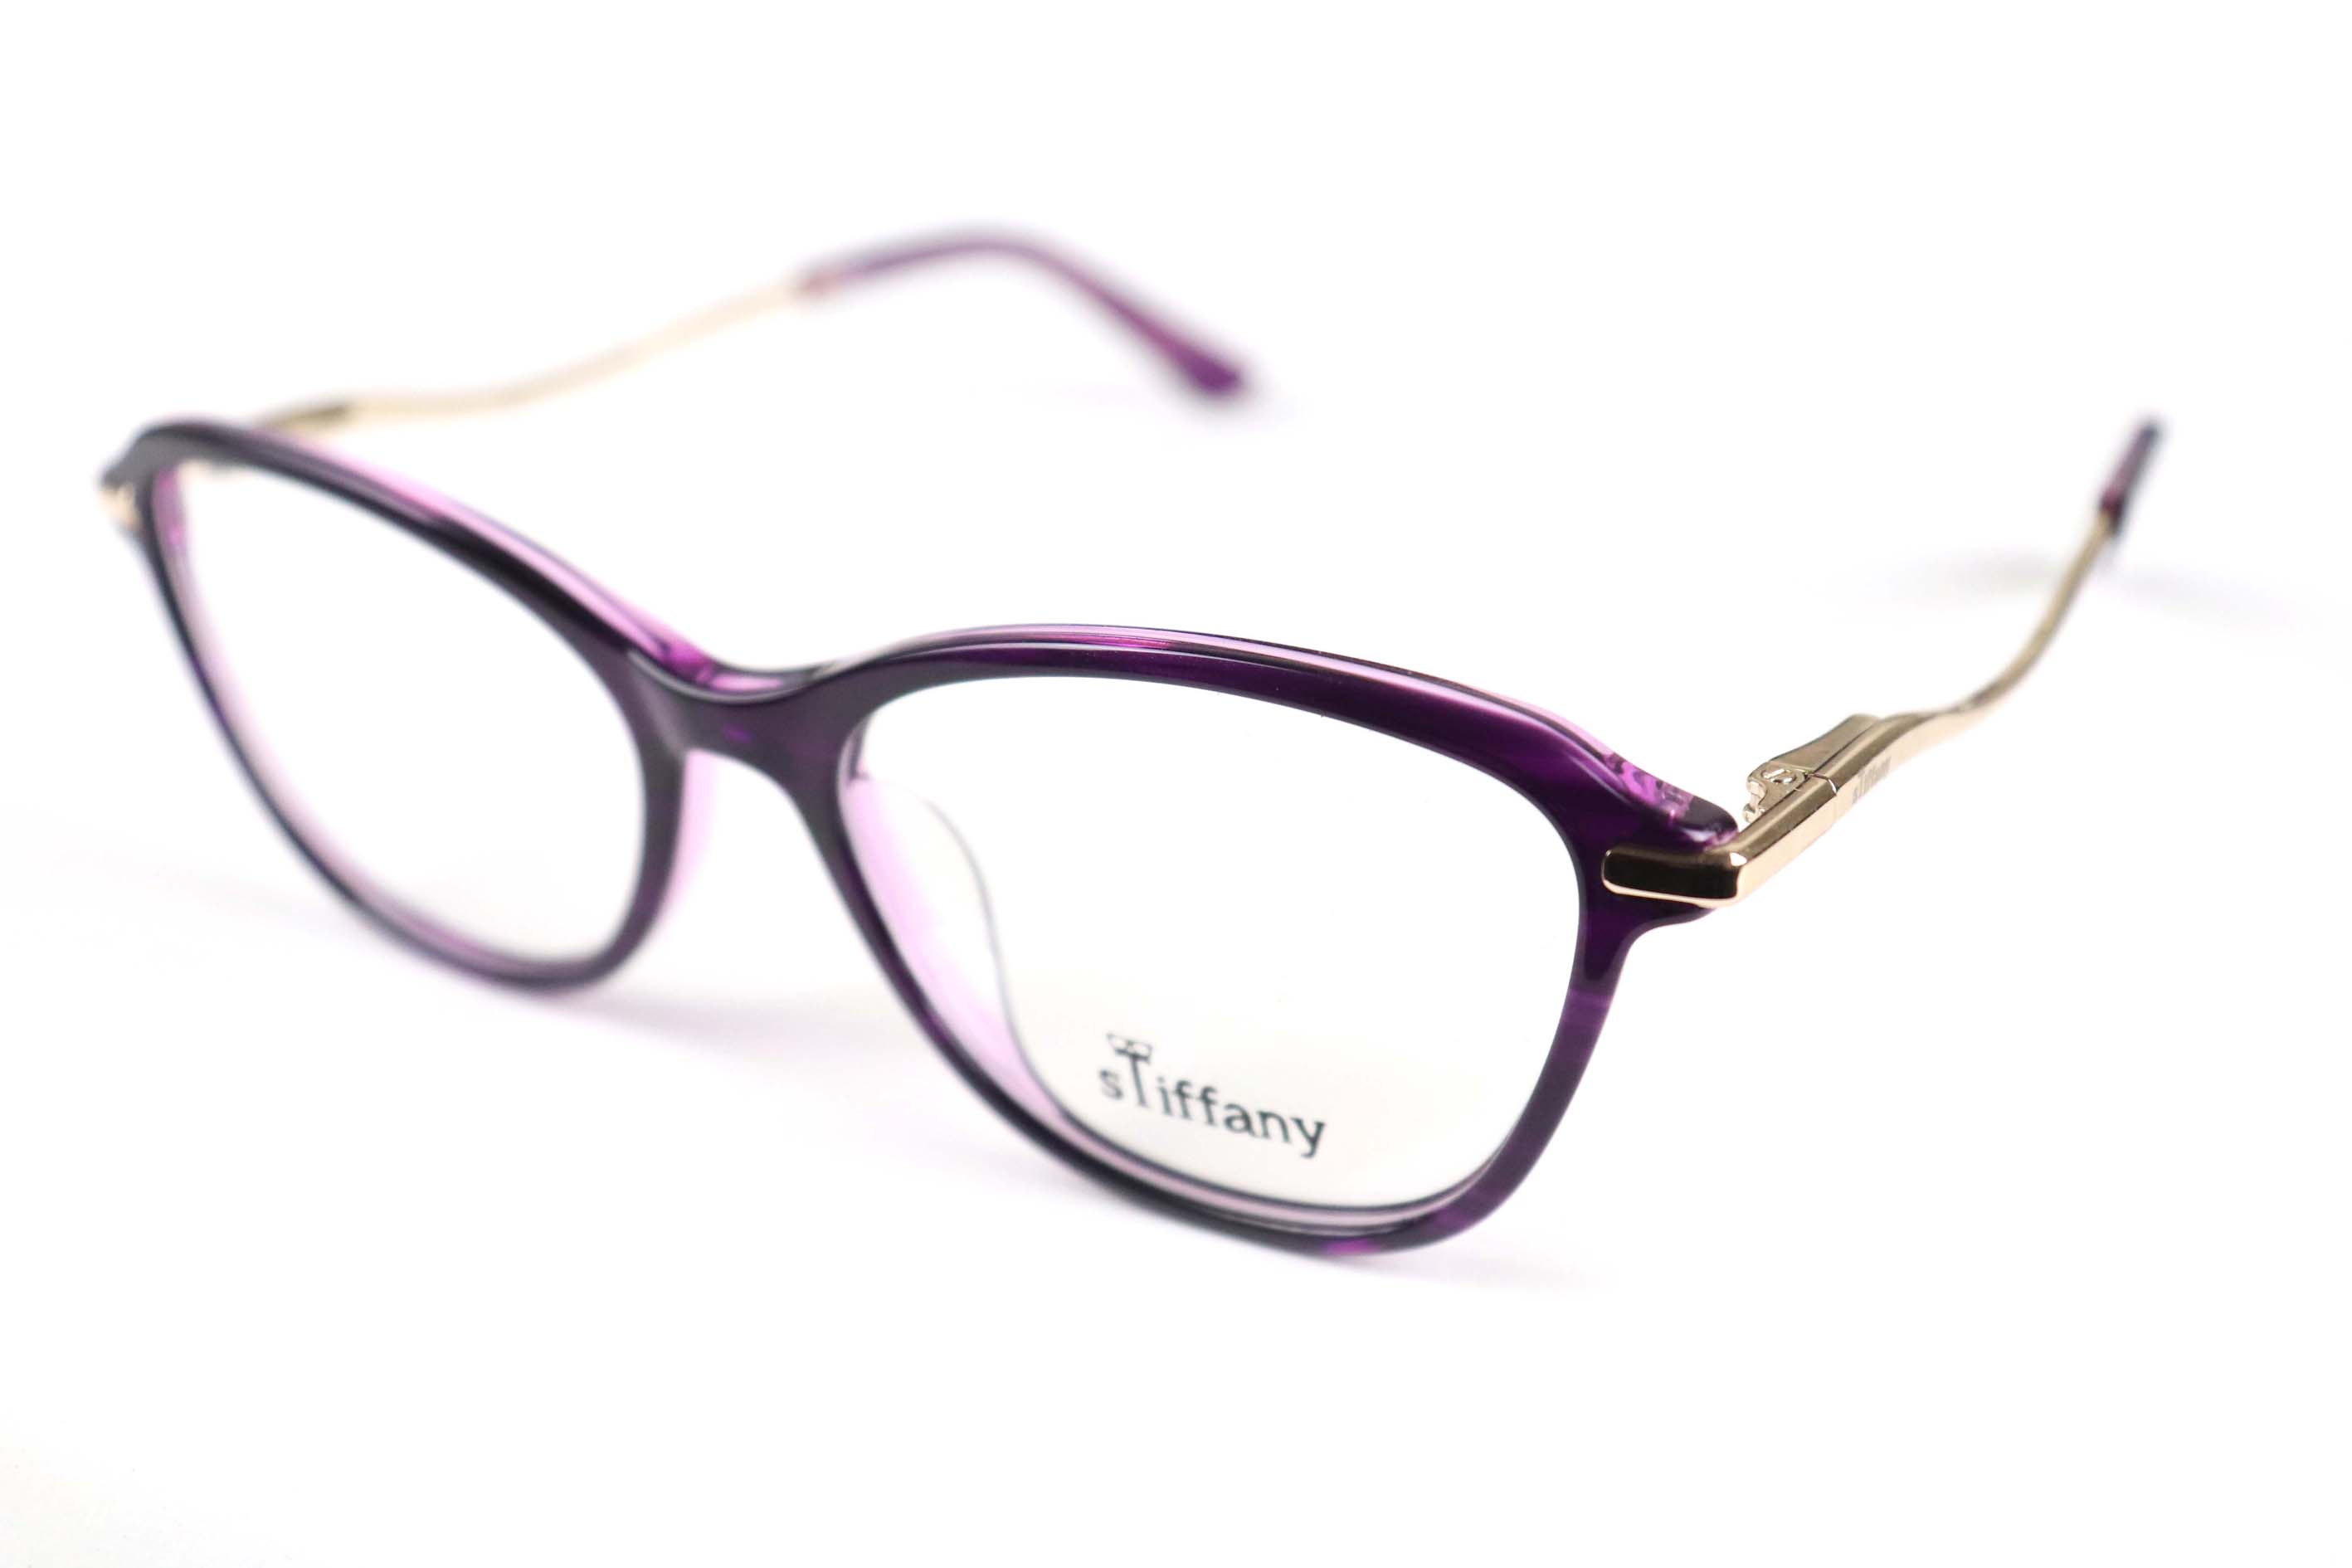 Stiffany Eyeglasses -FG1268-C3-52-16-140